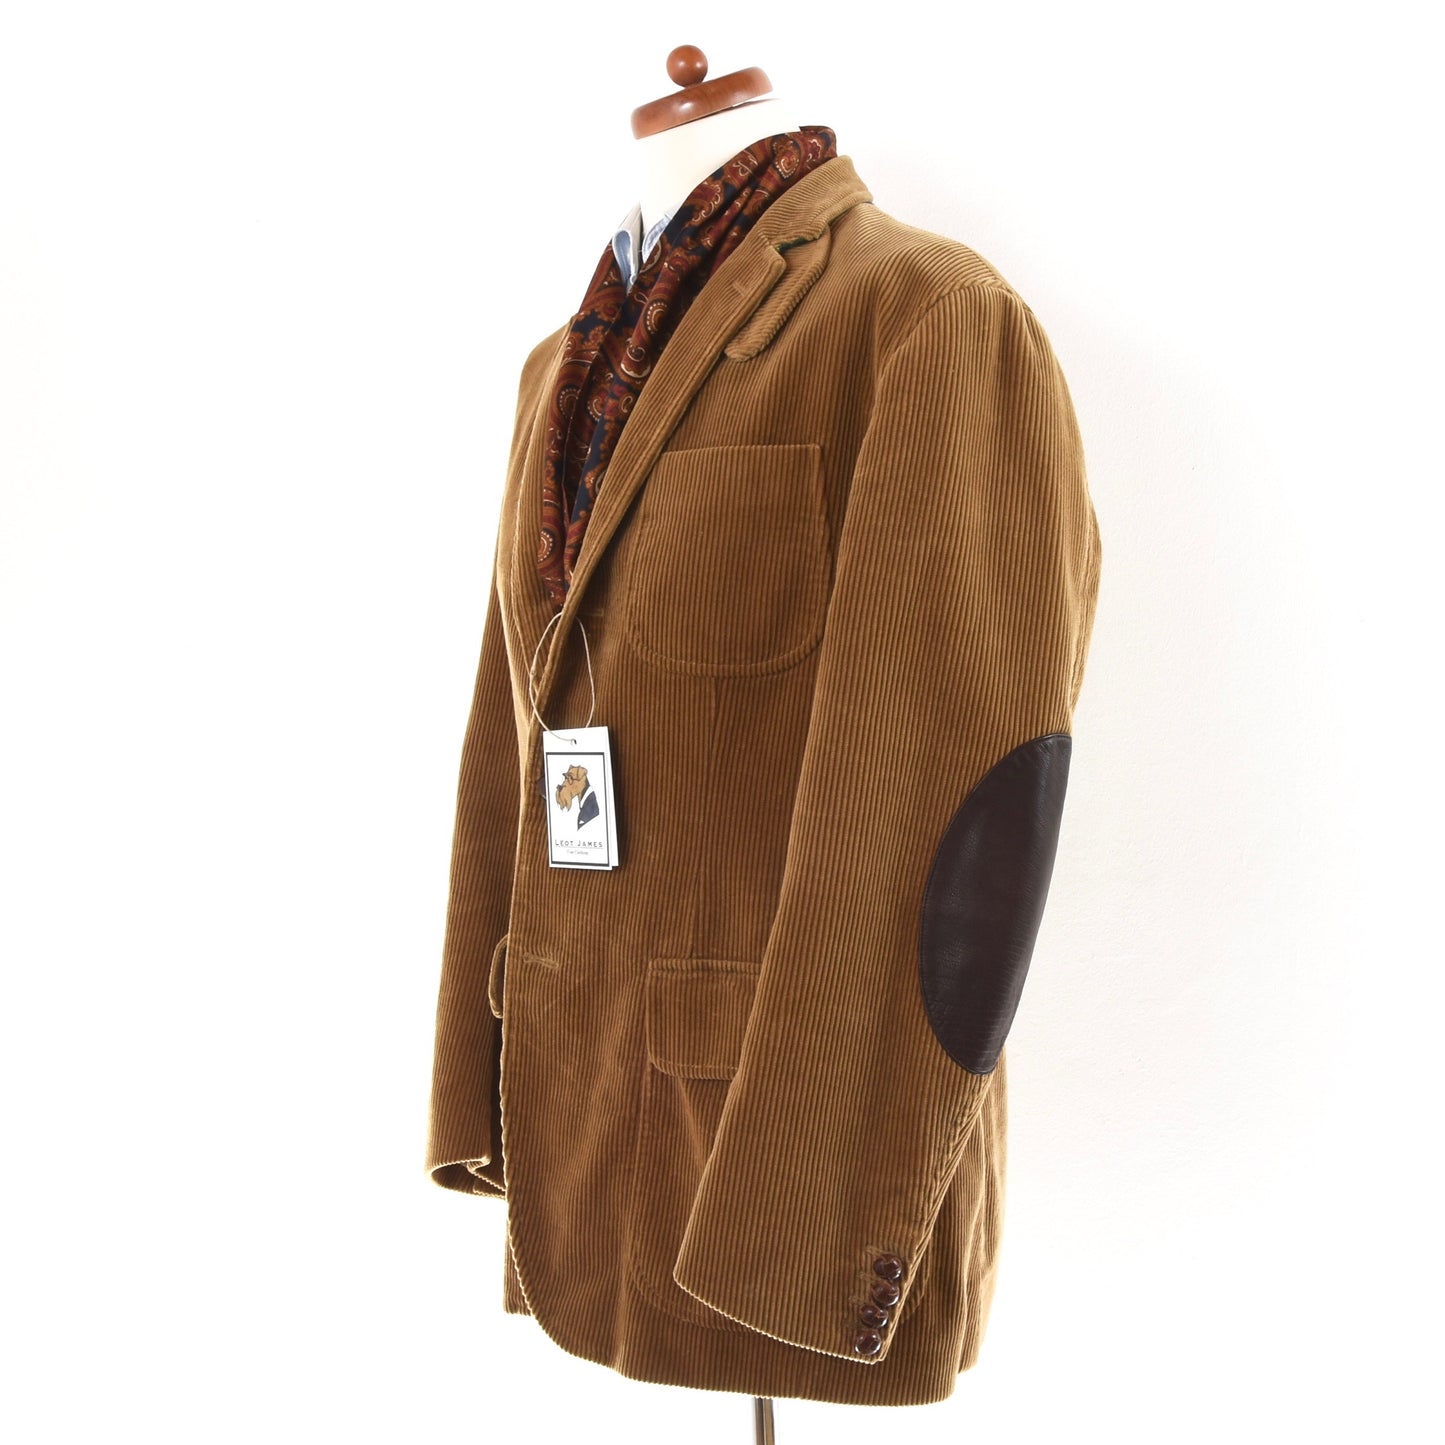 Polo Ralph Lauren Corduroy Jacket Size 42R - Tan